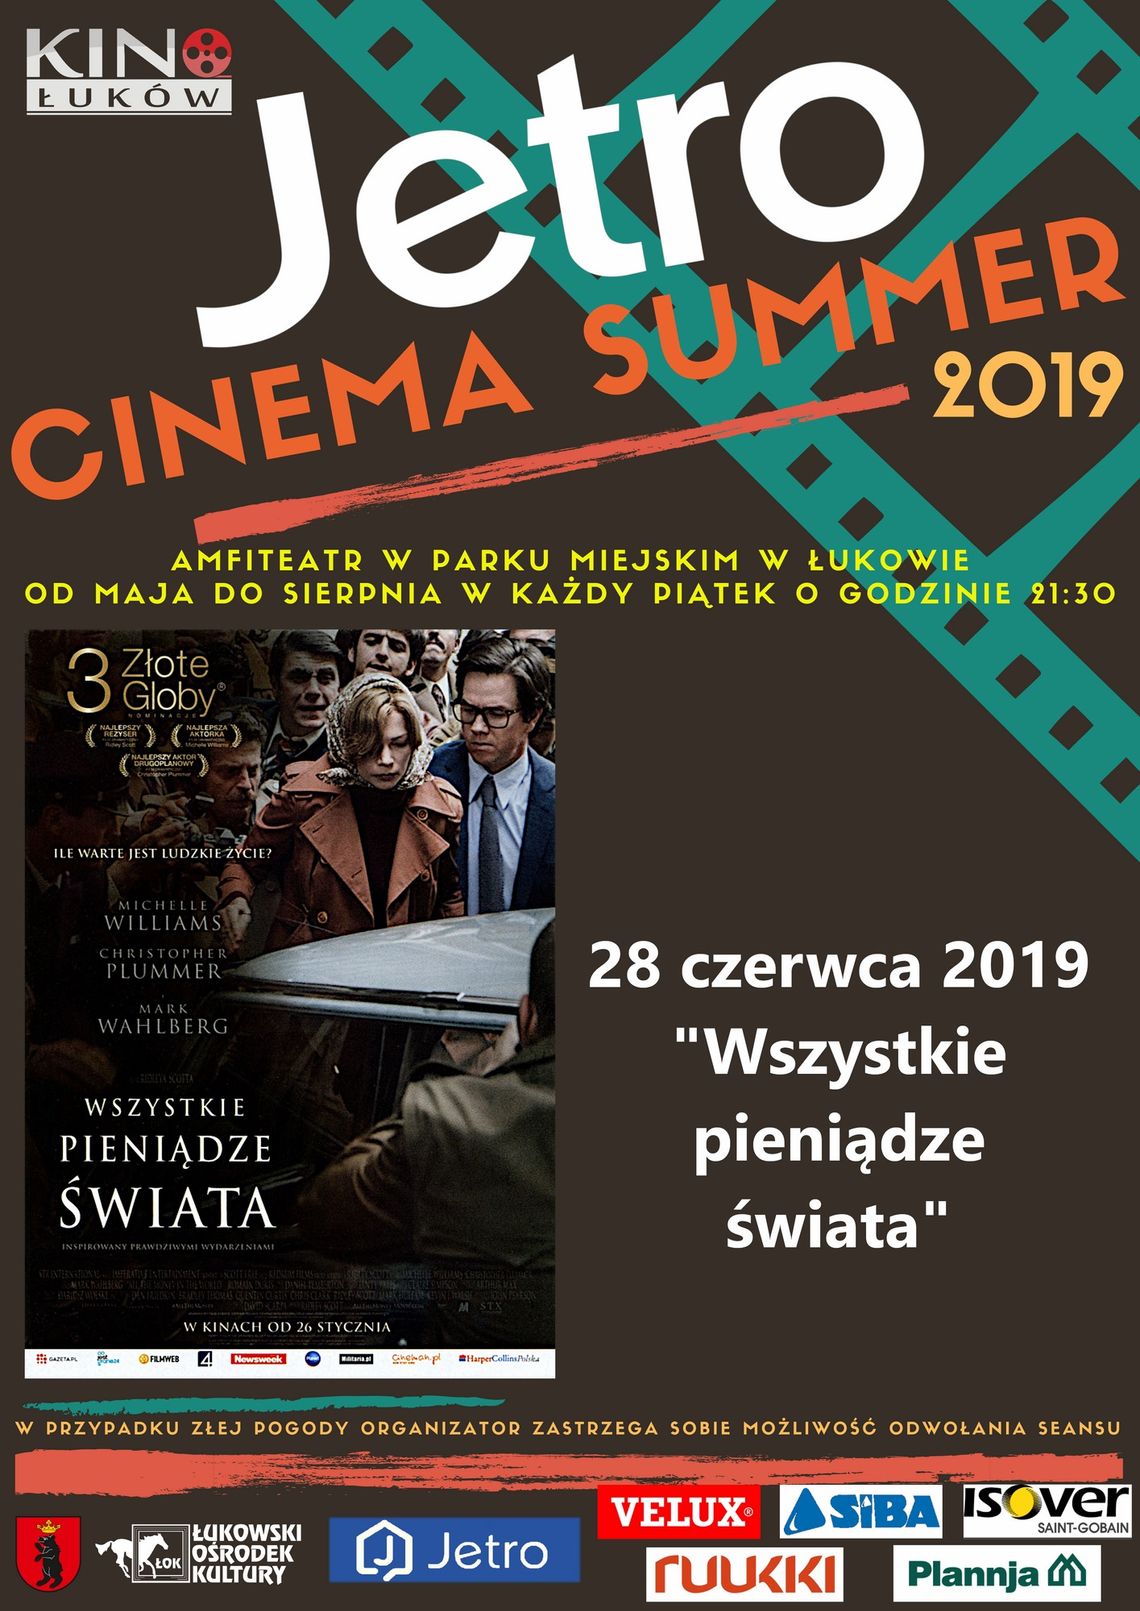 Jetro Cinema Summer 2019 "Wszystkie pieniądze świata" /28 czerwca 2019